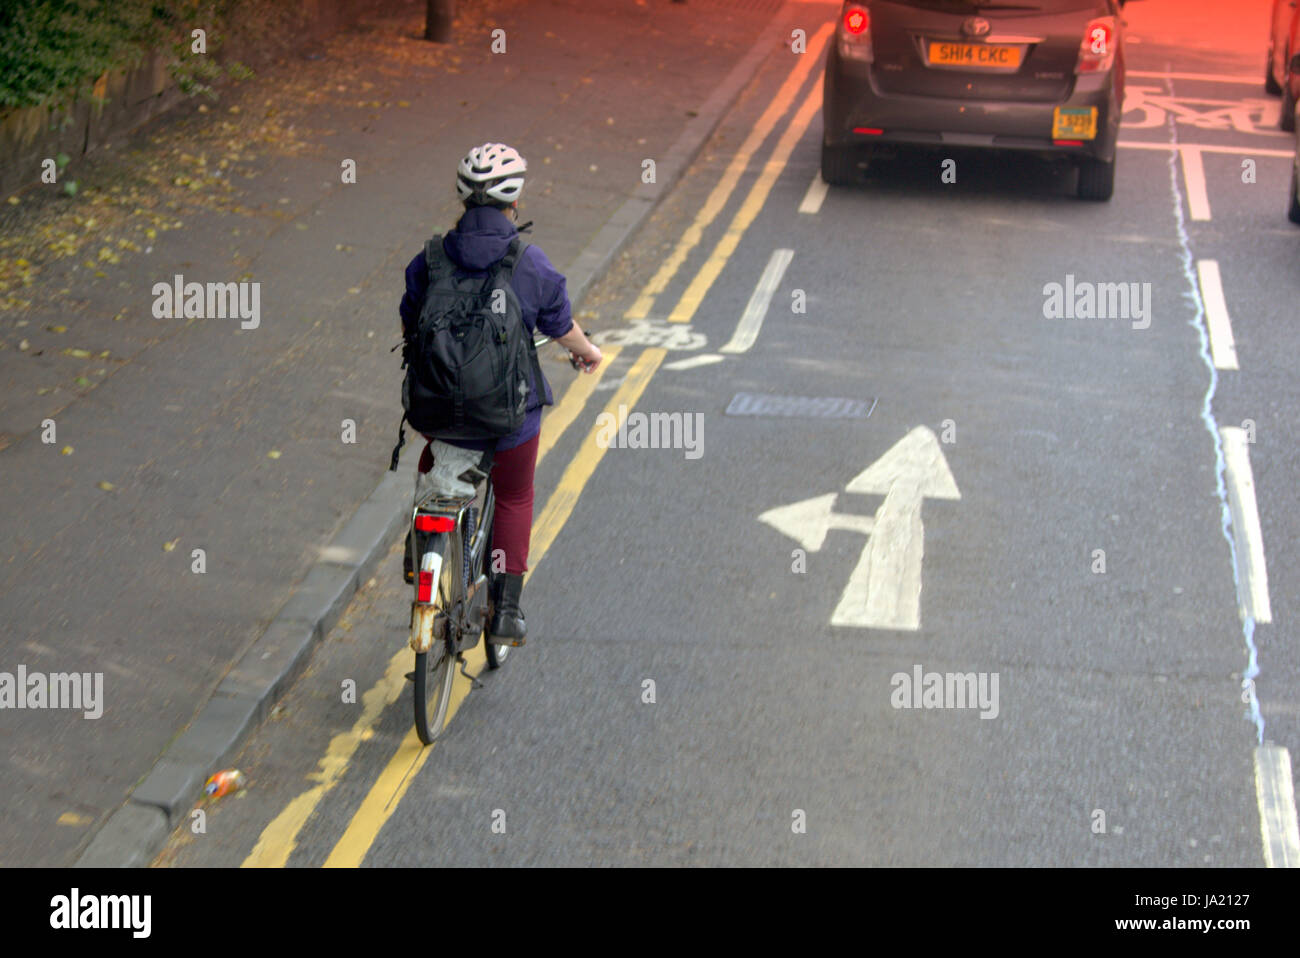 Jeune fille en vélo cycliste de trafic routier occupé près de la piste cyclable et de danger Banque D'Images